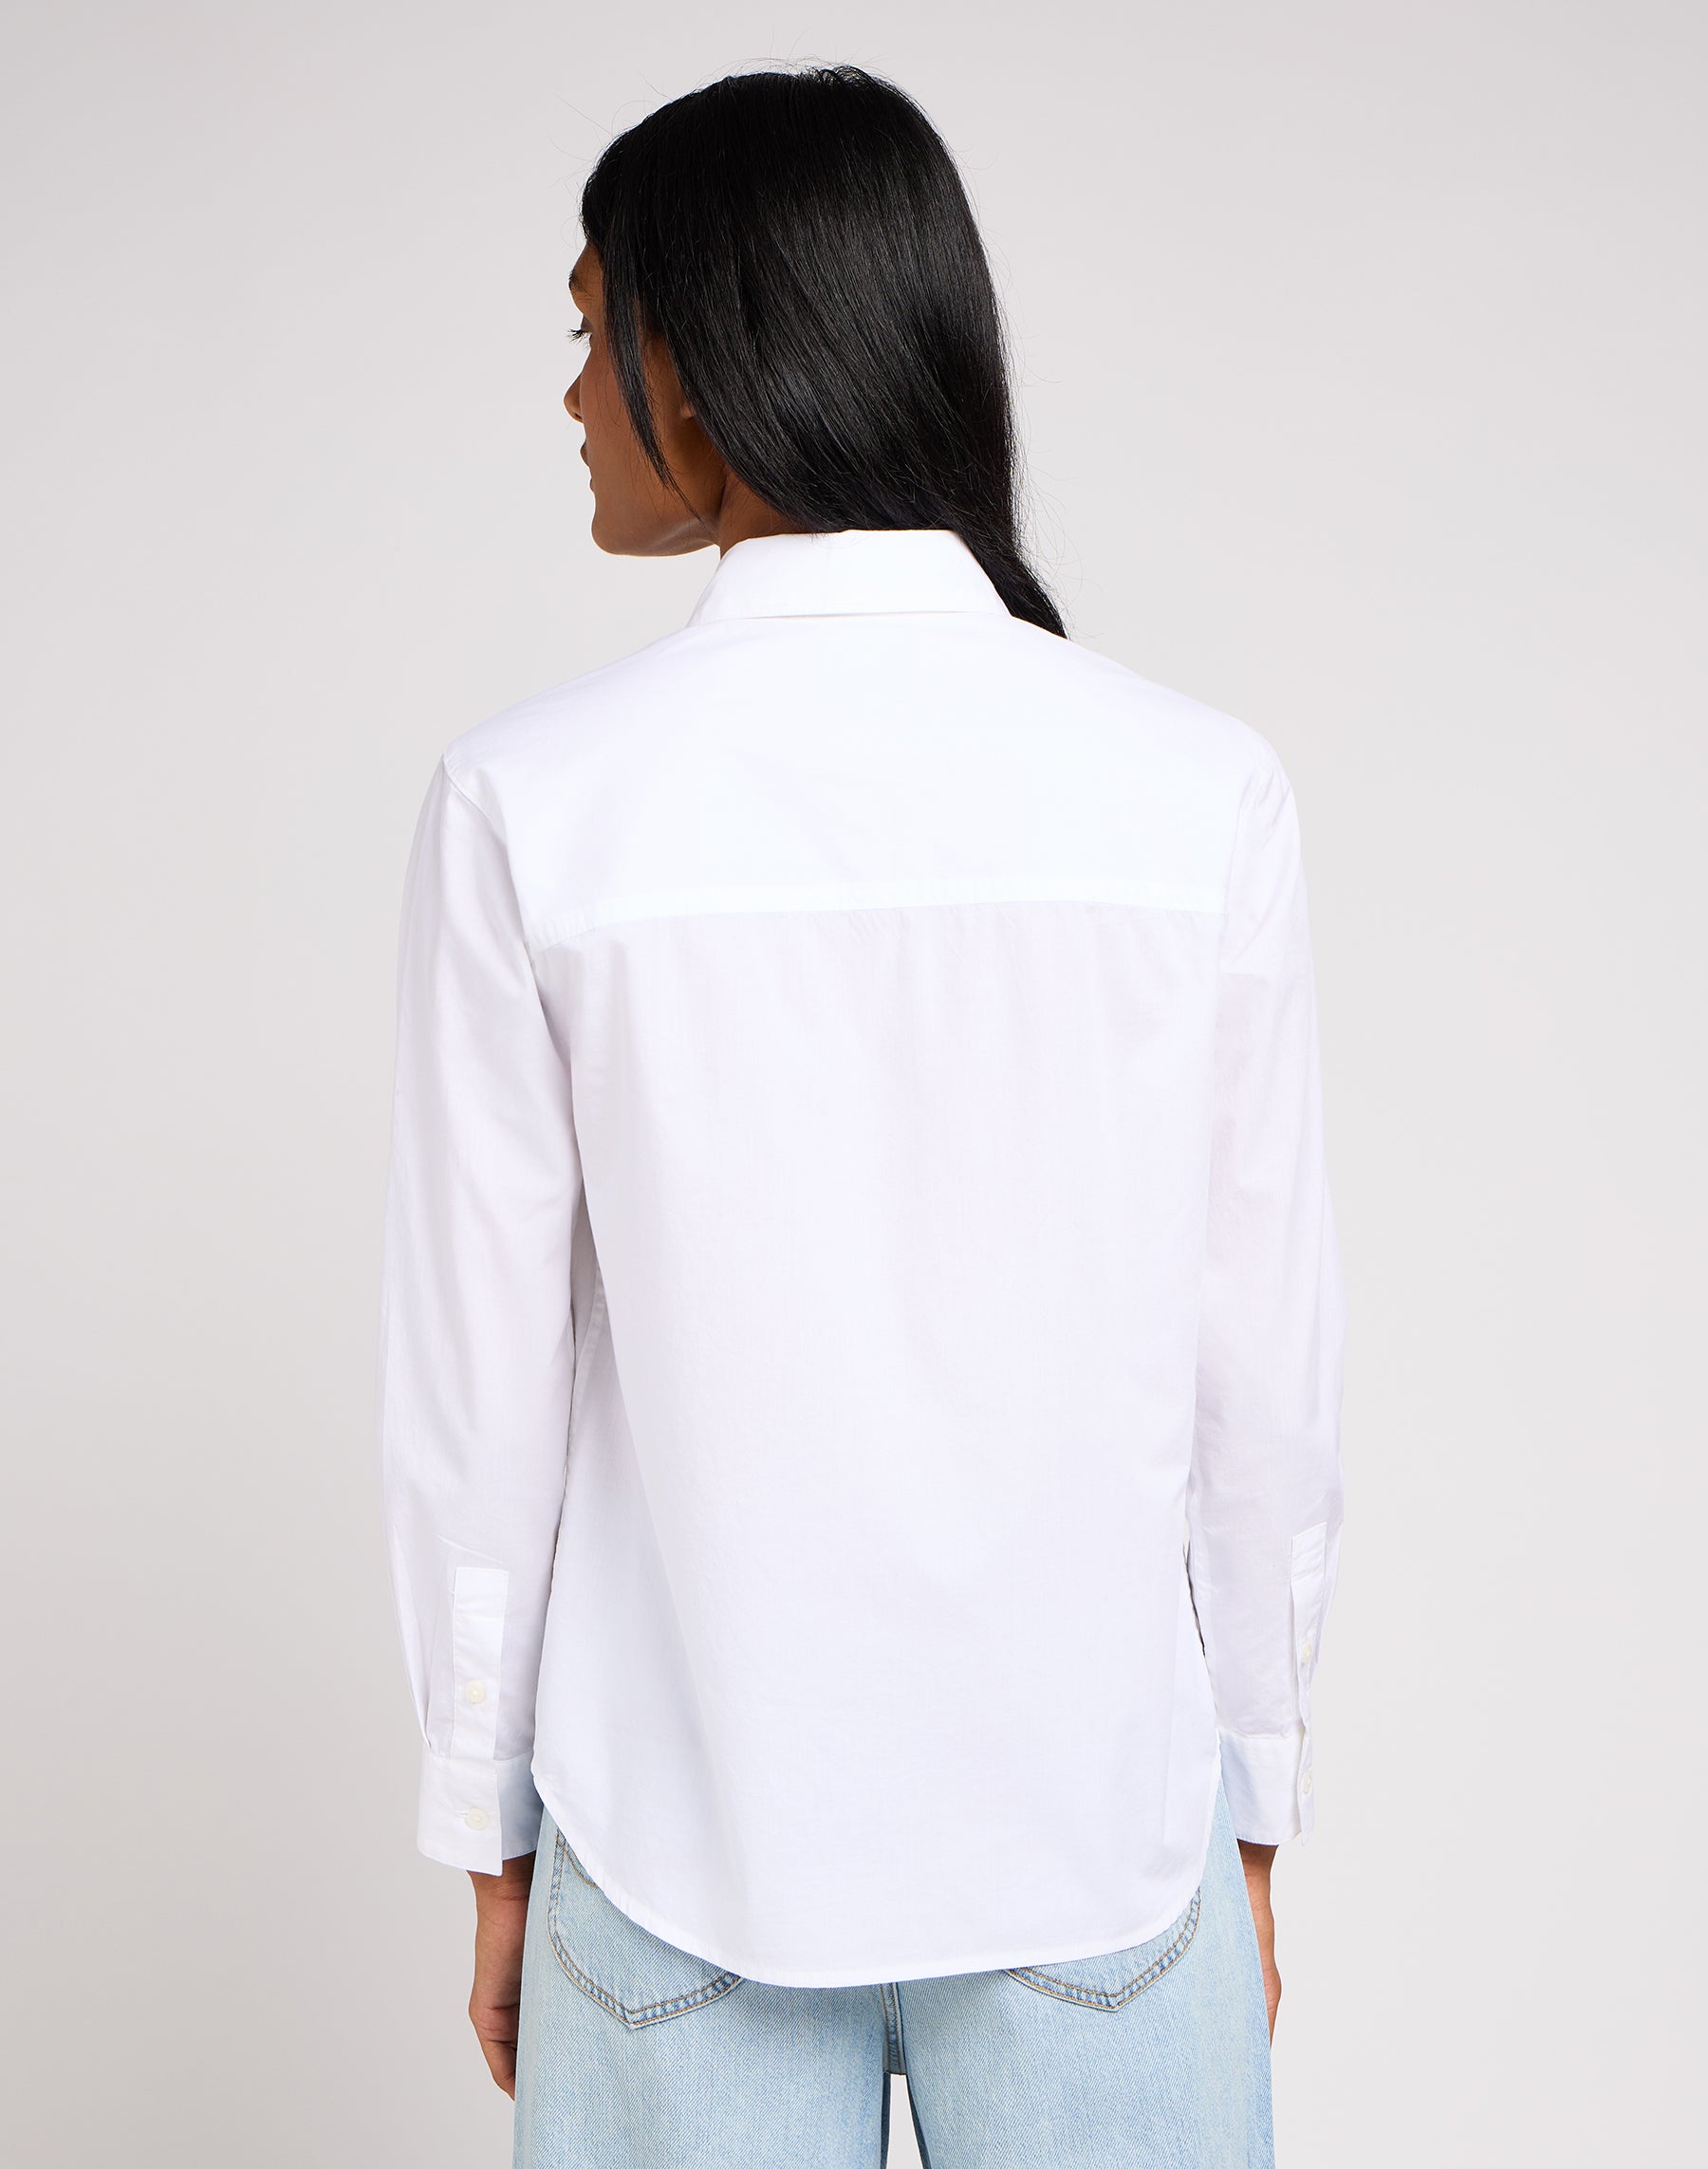 All Purpose Shirt in Bright White Hemden Lee   